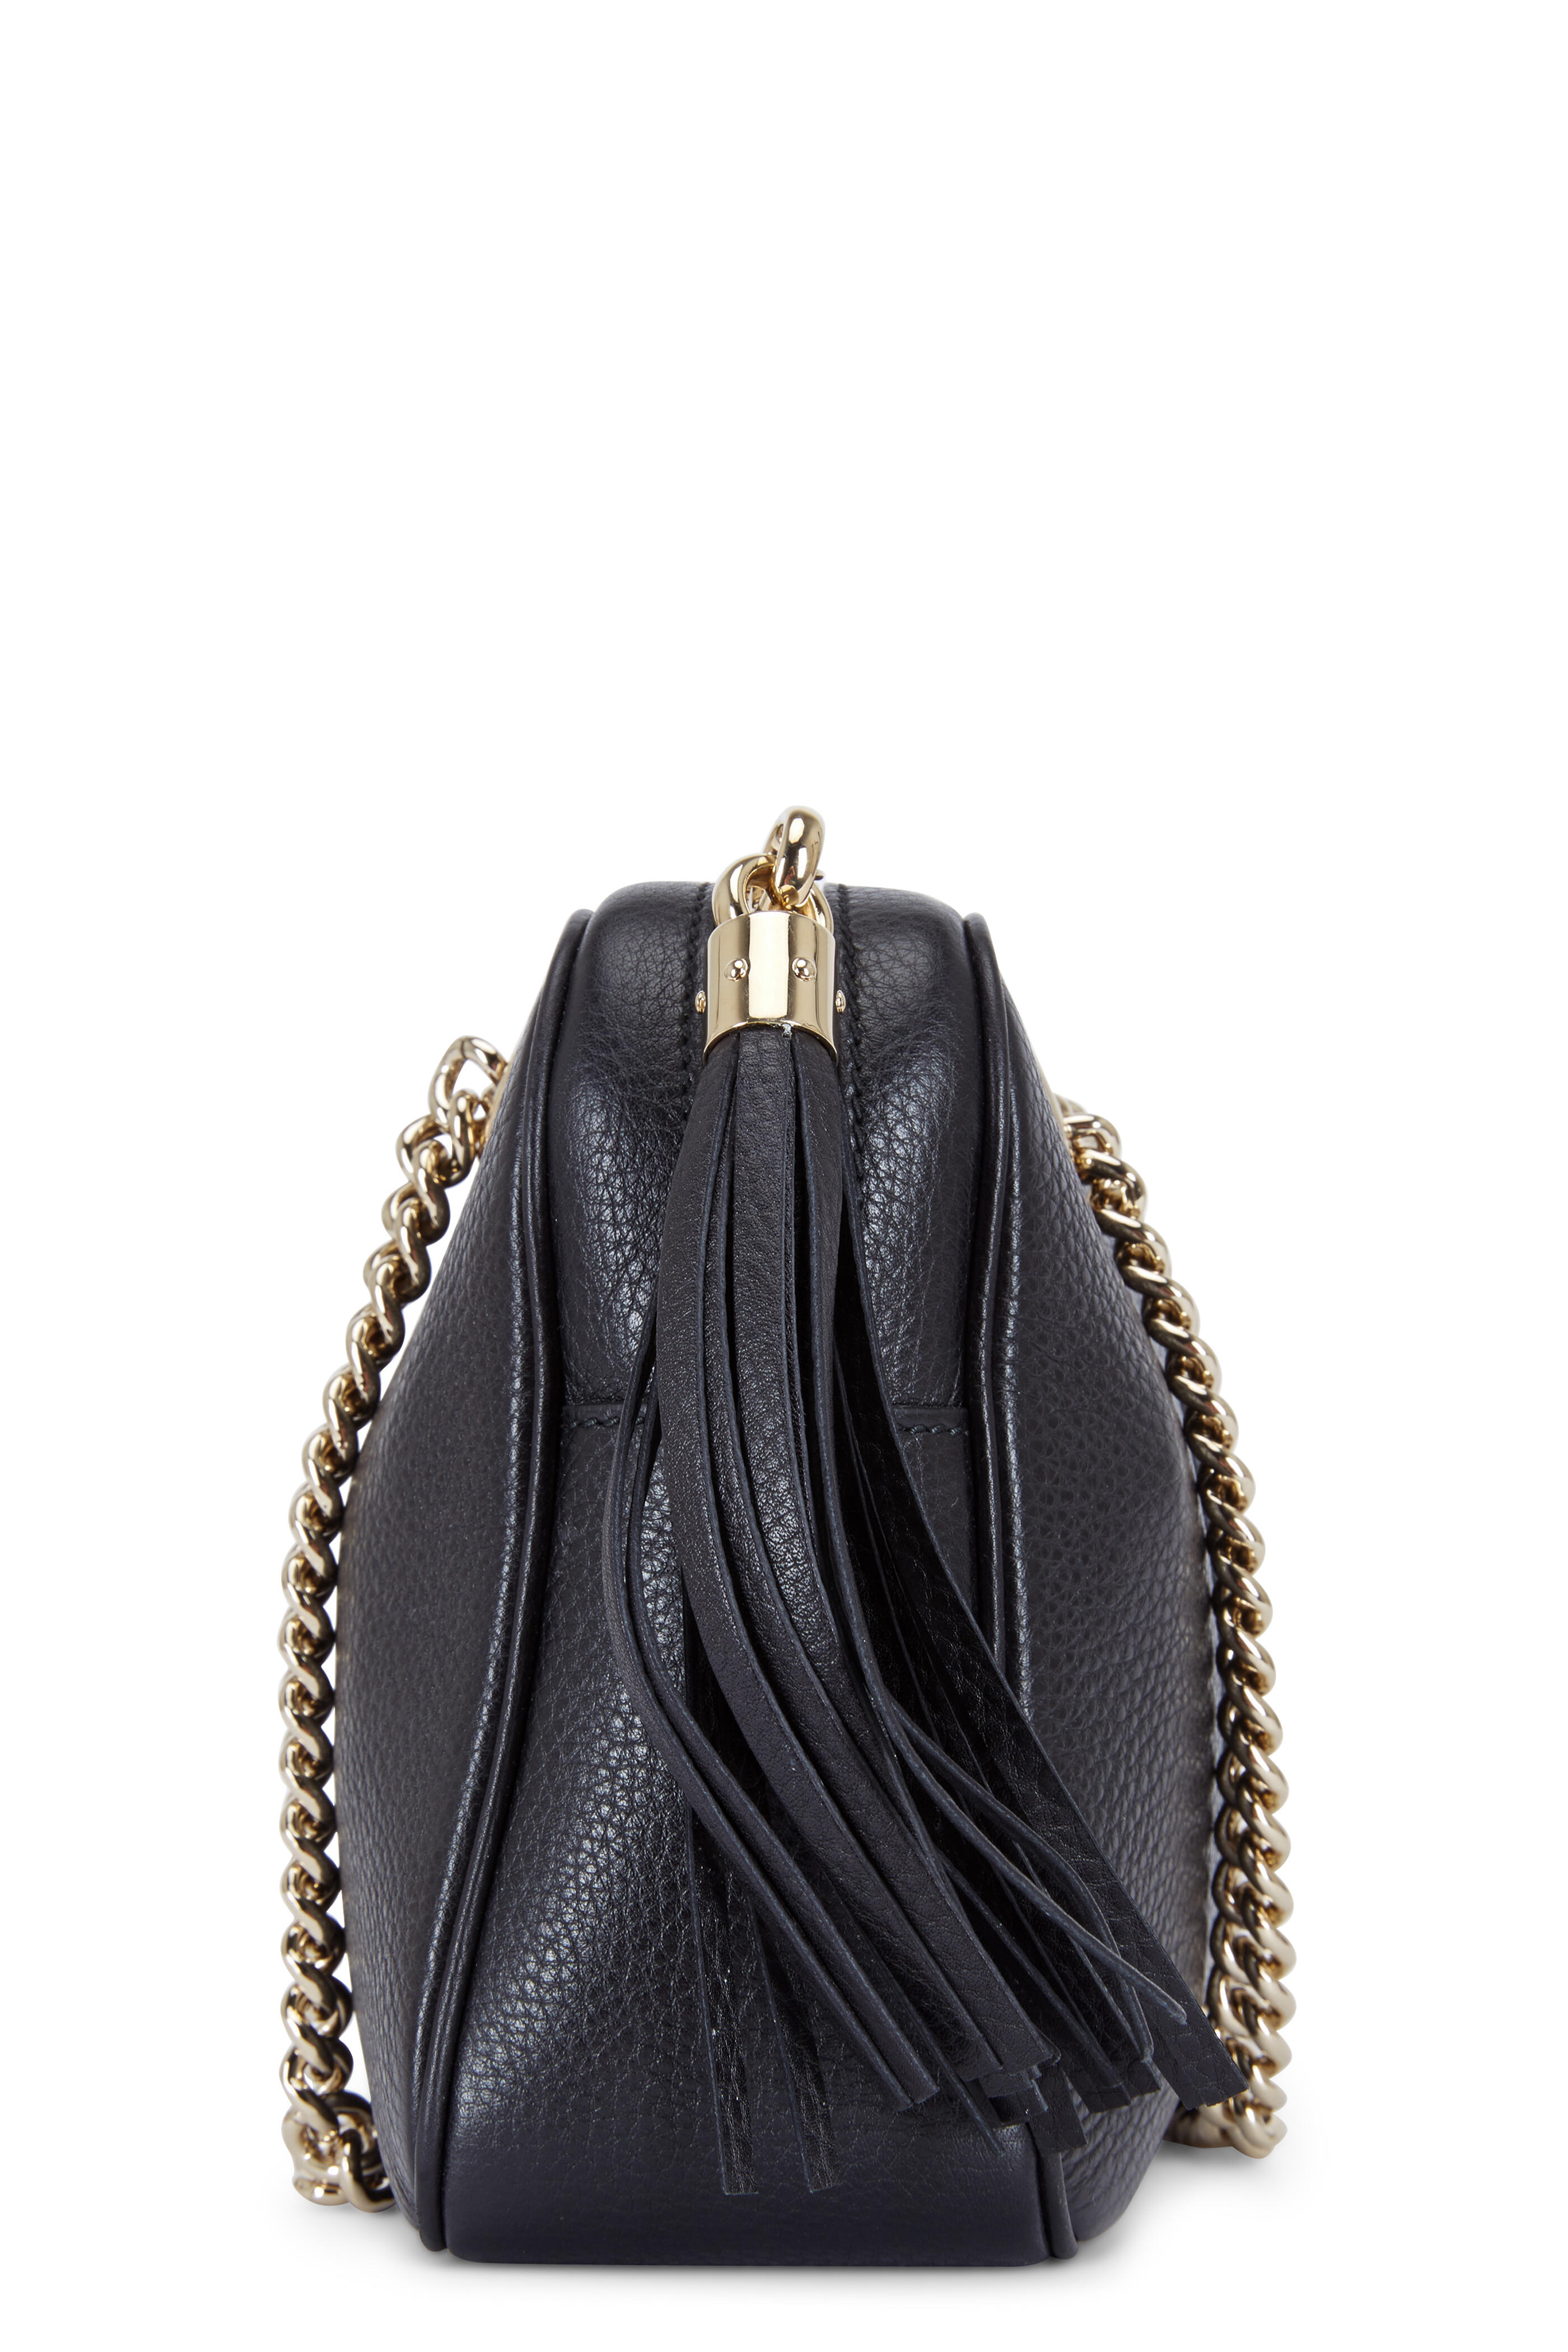 Gucci - Soho Black Leather Small Chain Strap